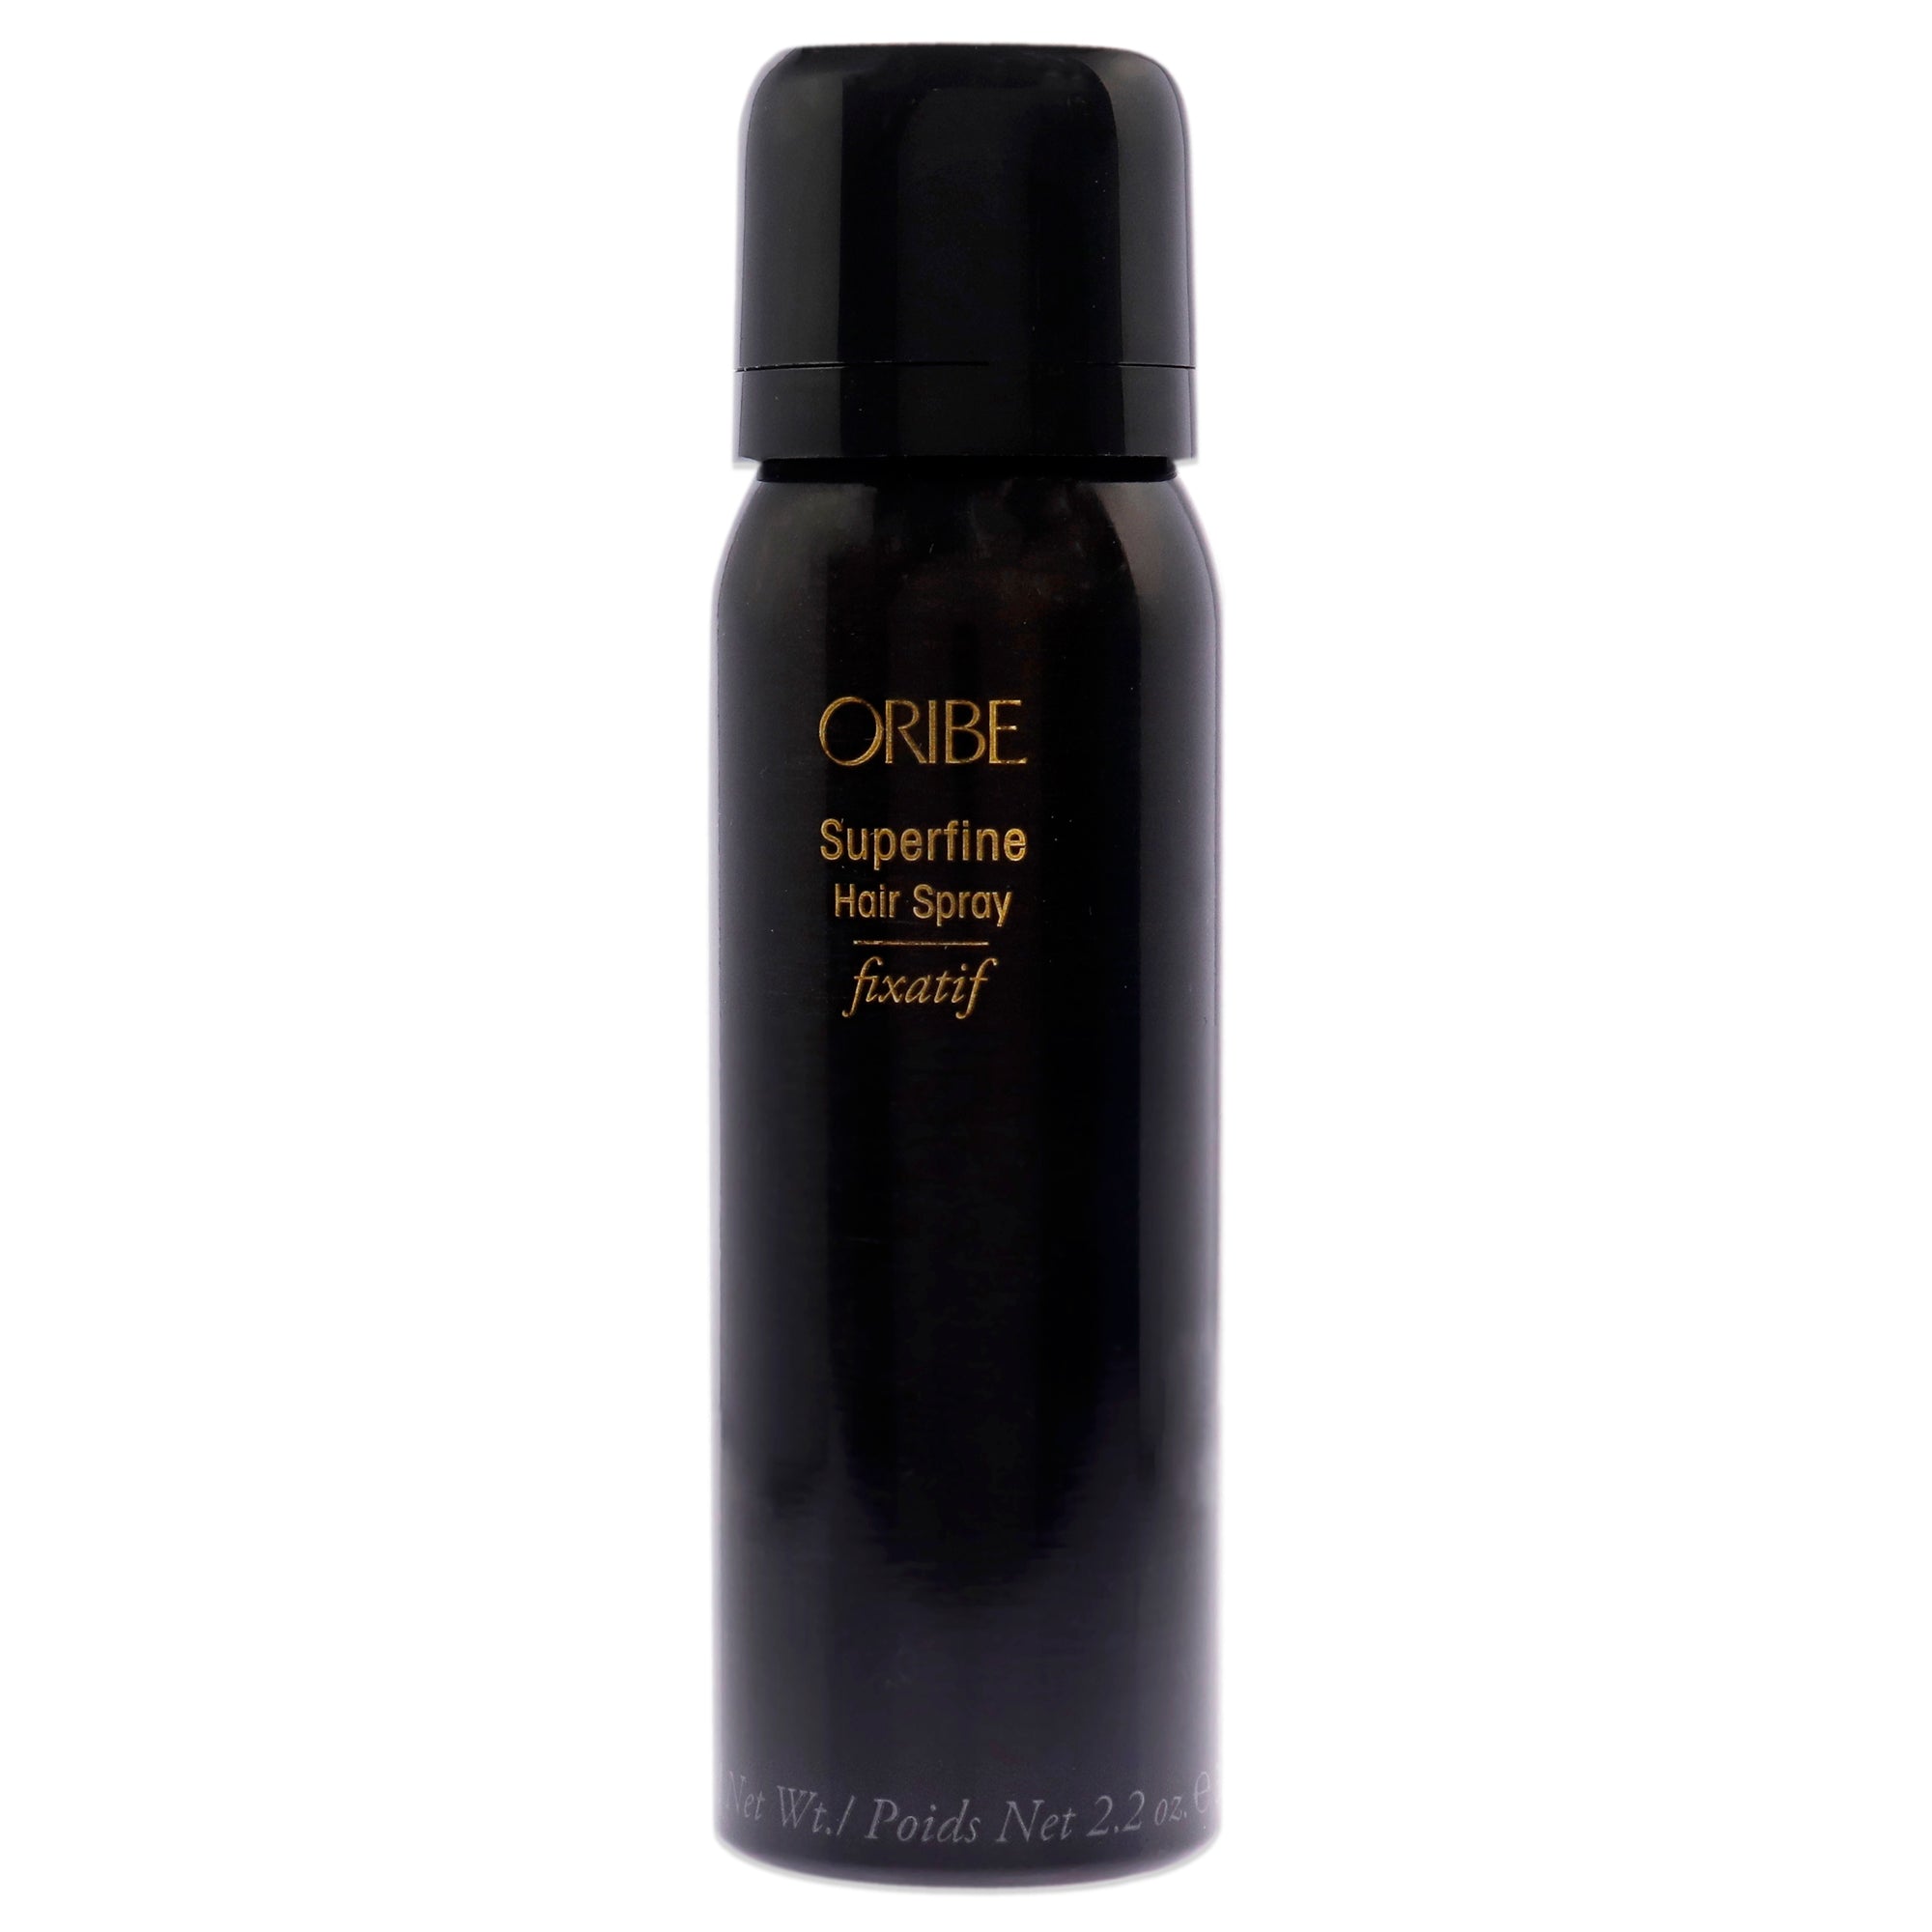 Superfine Hairspray by Oribe for Unisex - 2.2 oz Hair Spray